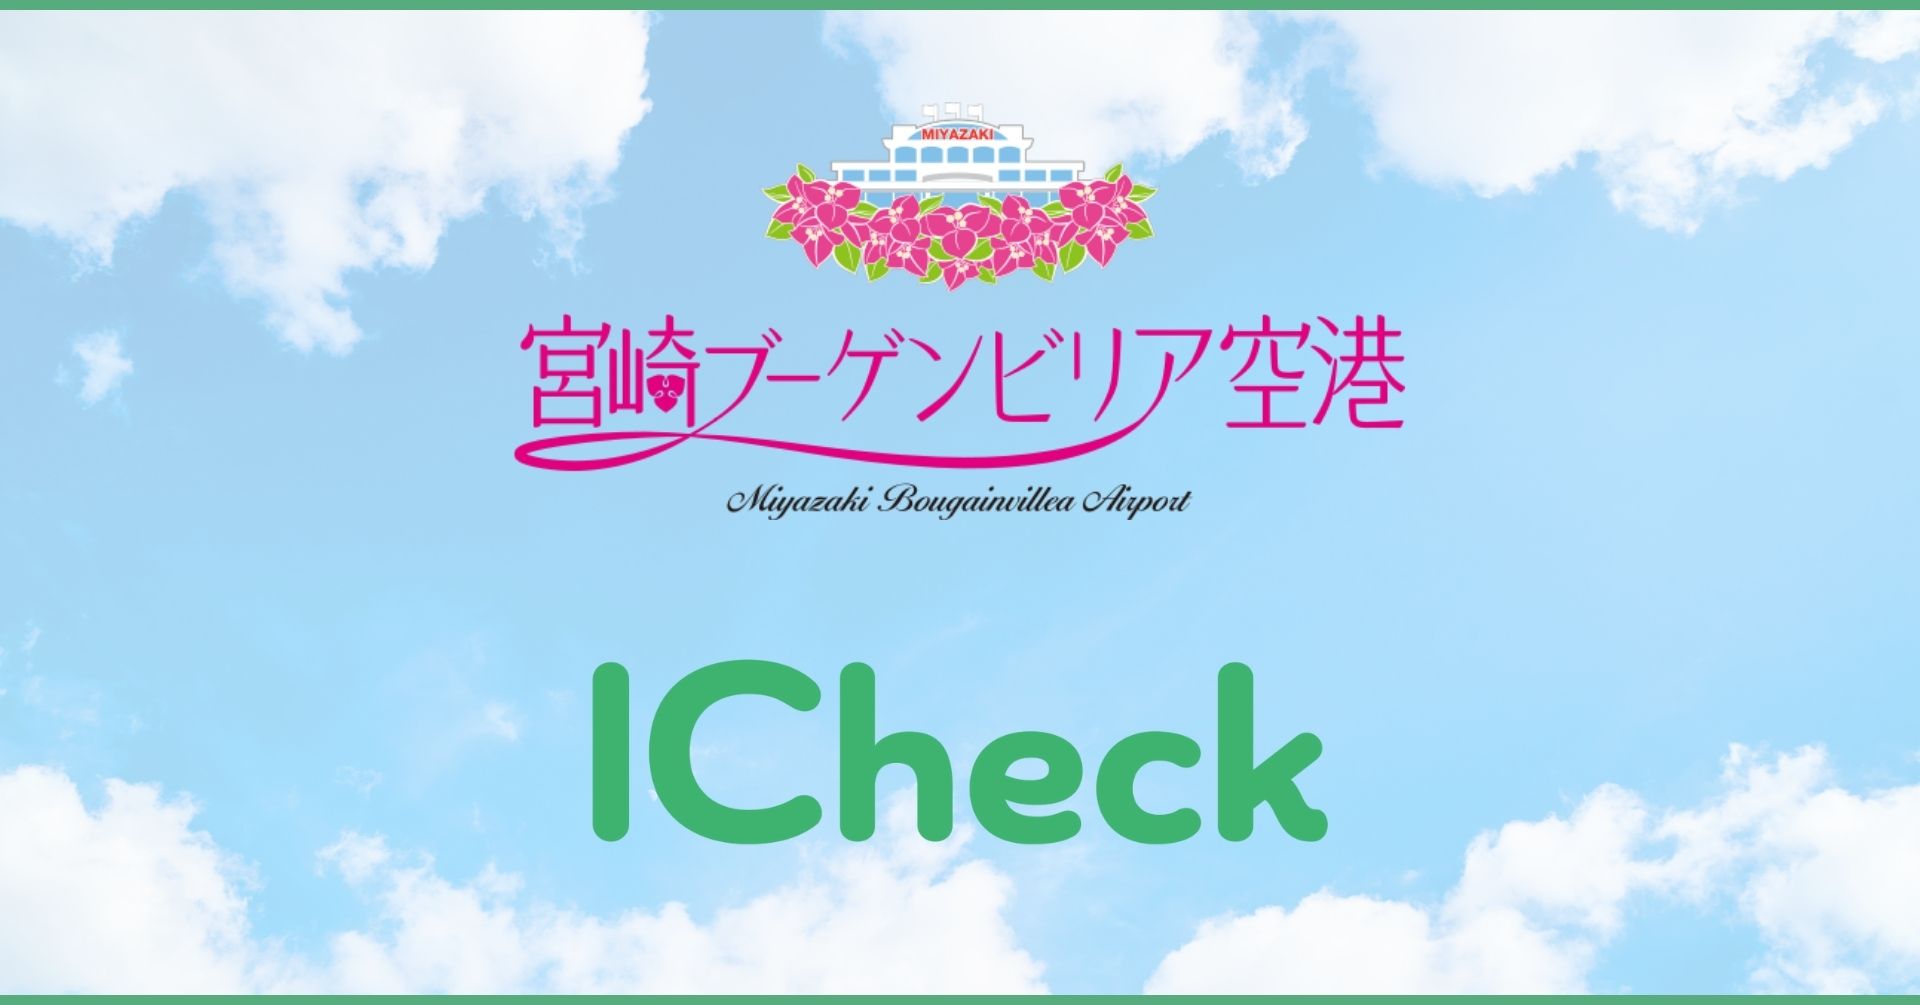 宮崎ブーゲンビリア空港で Icheck の新型コロナ抗原検査キットの販売が開始されました Icheck株式会社のプレスリリース